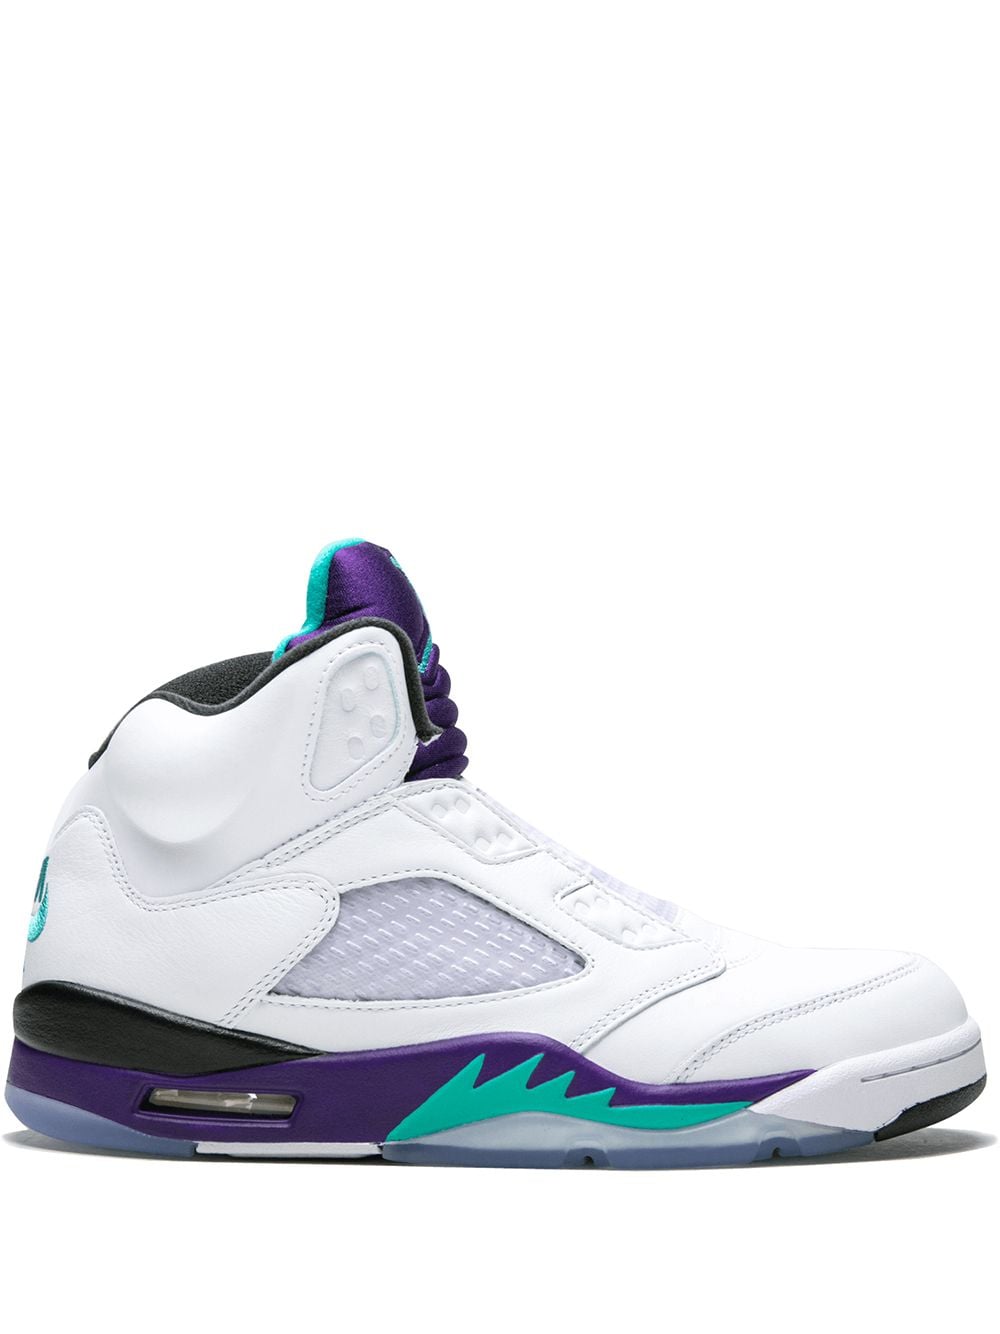 Jordan Jordan 5 Retro NRG "Fresh Prince Of Bel-Air" sneakers - White